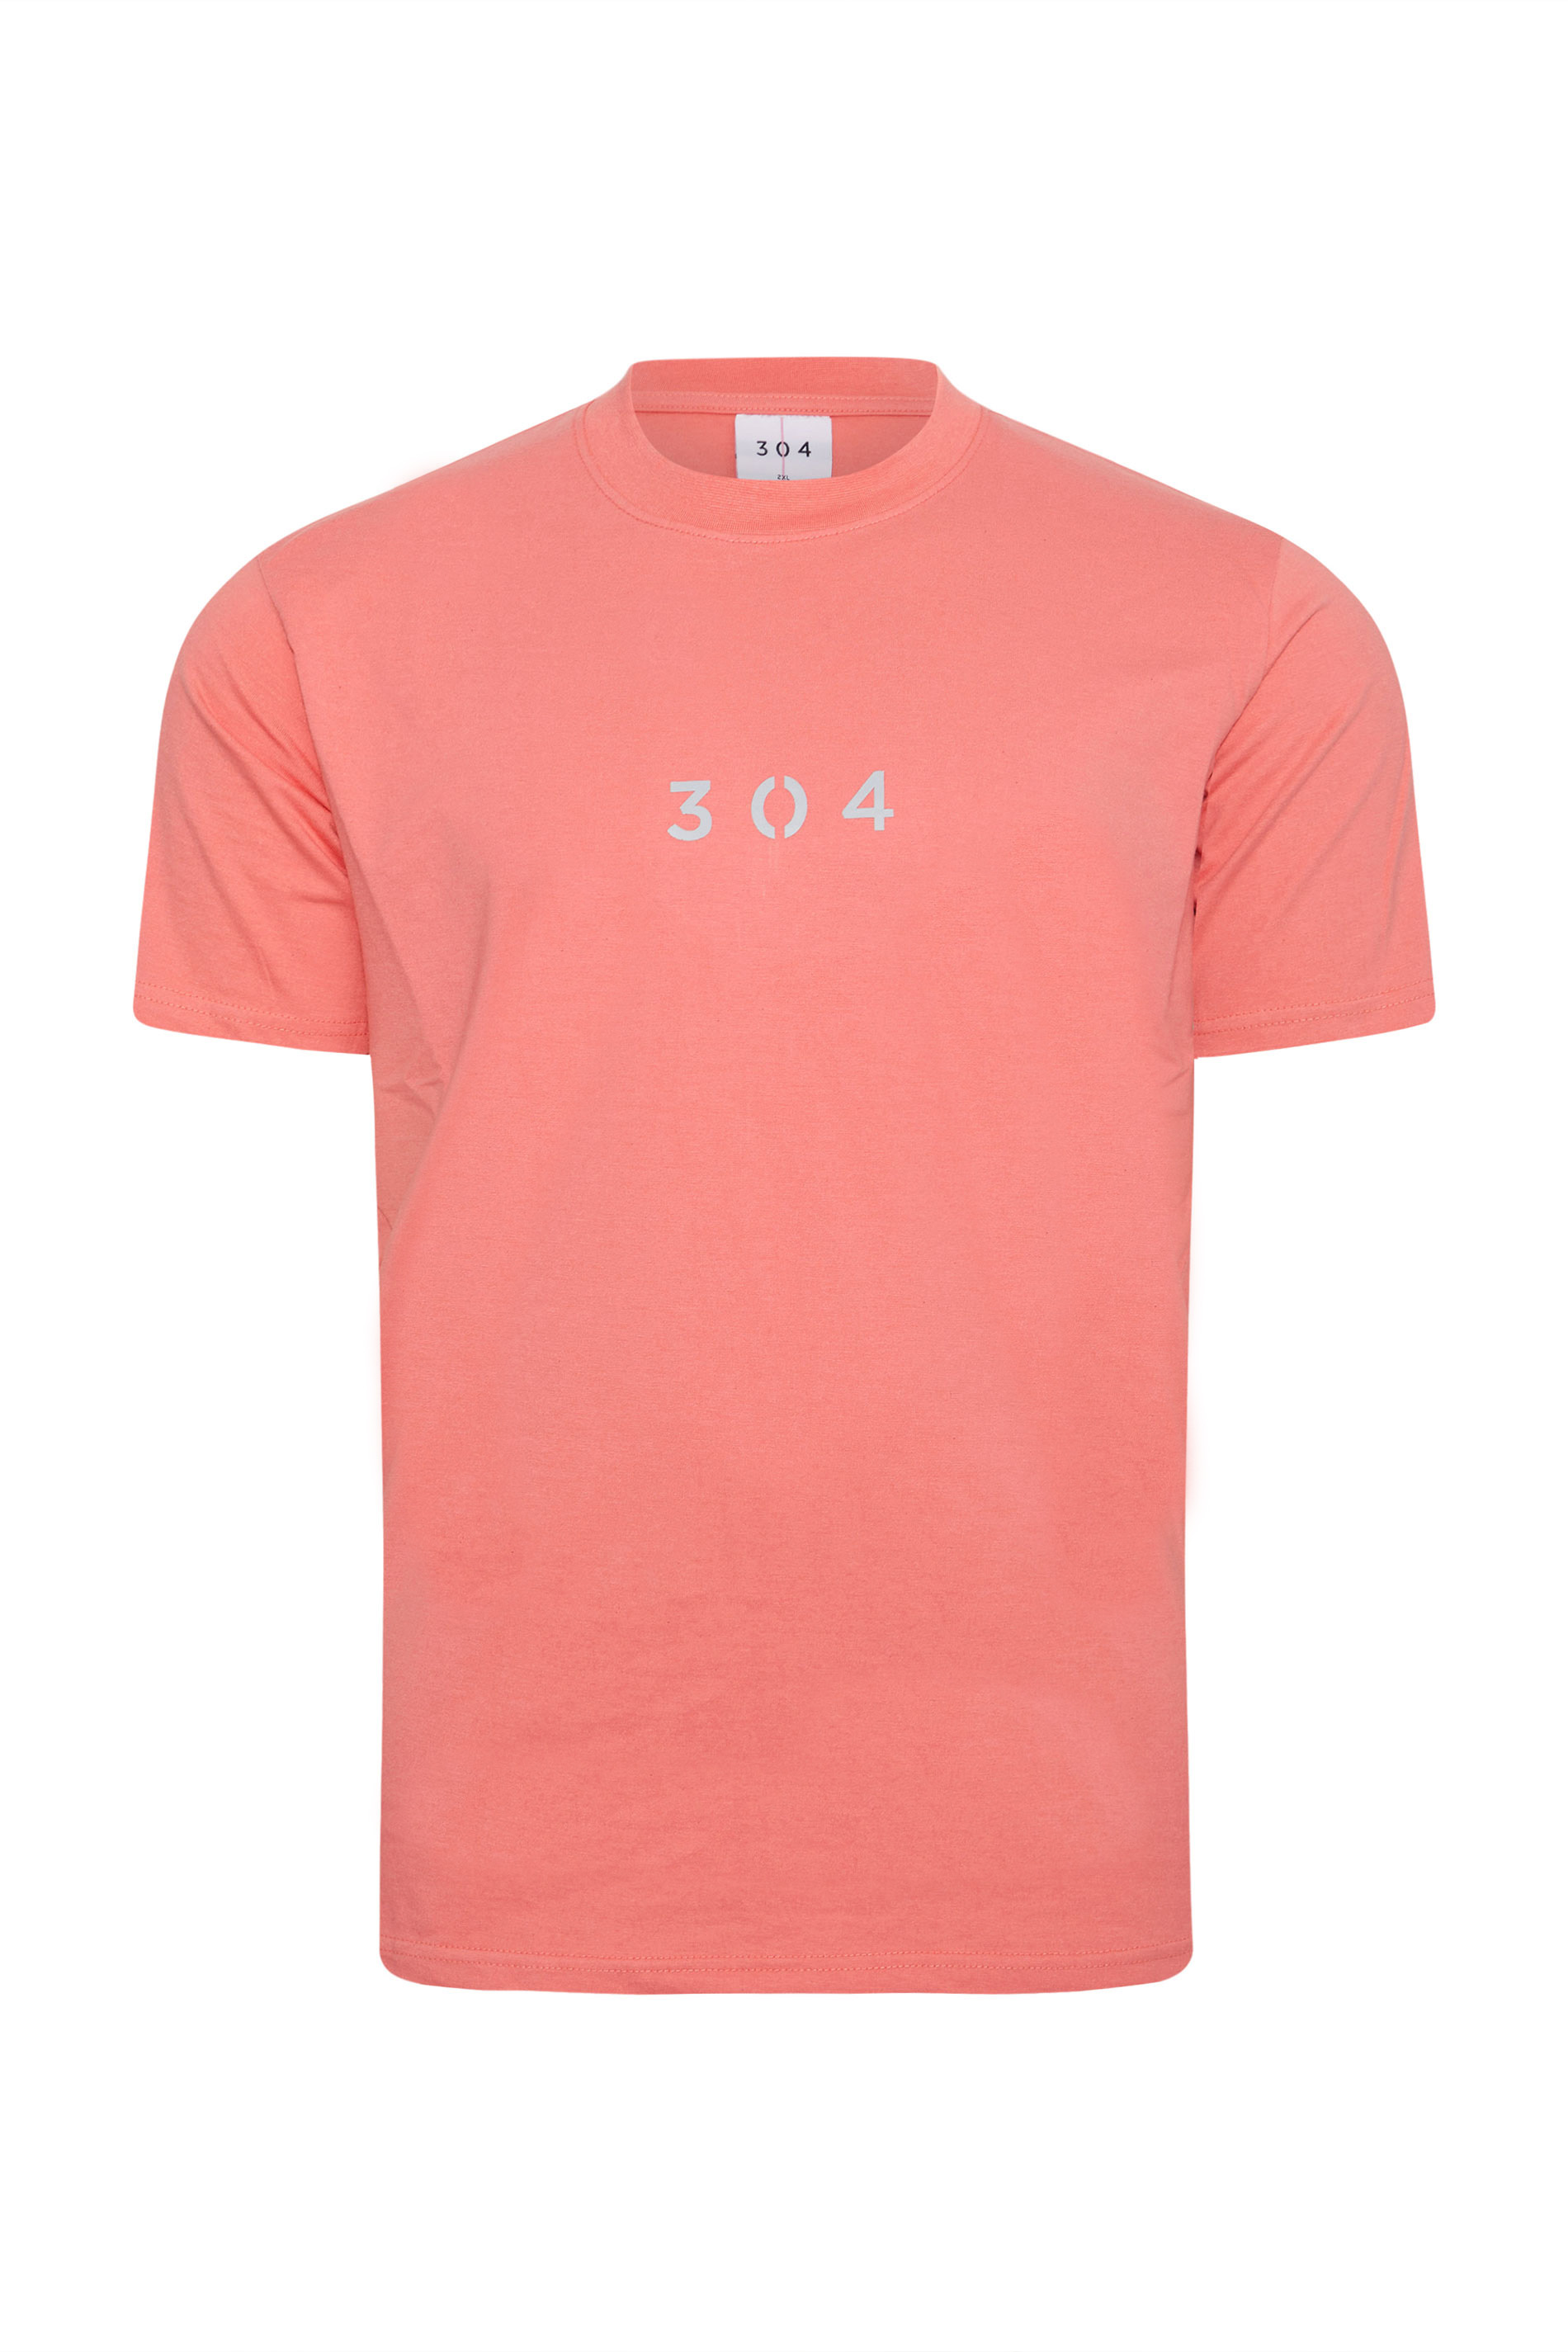 304 CLOTHING Big & Tall Pink Core T-Shirt_X.jpg